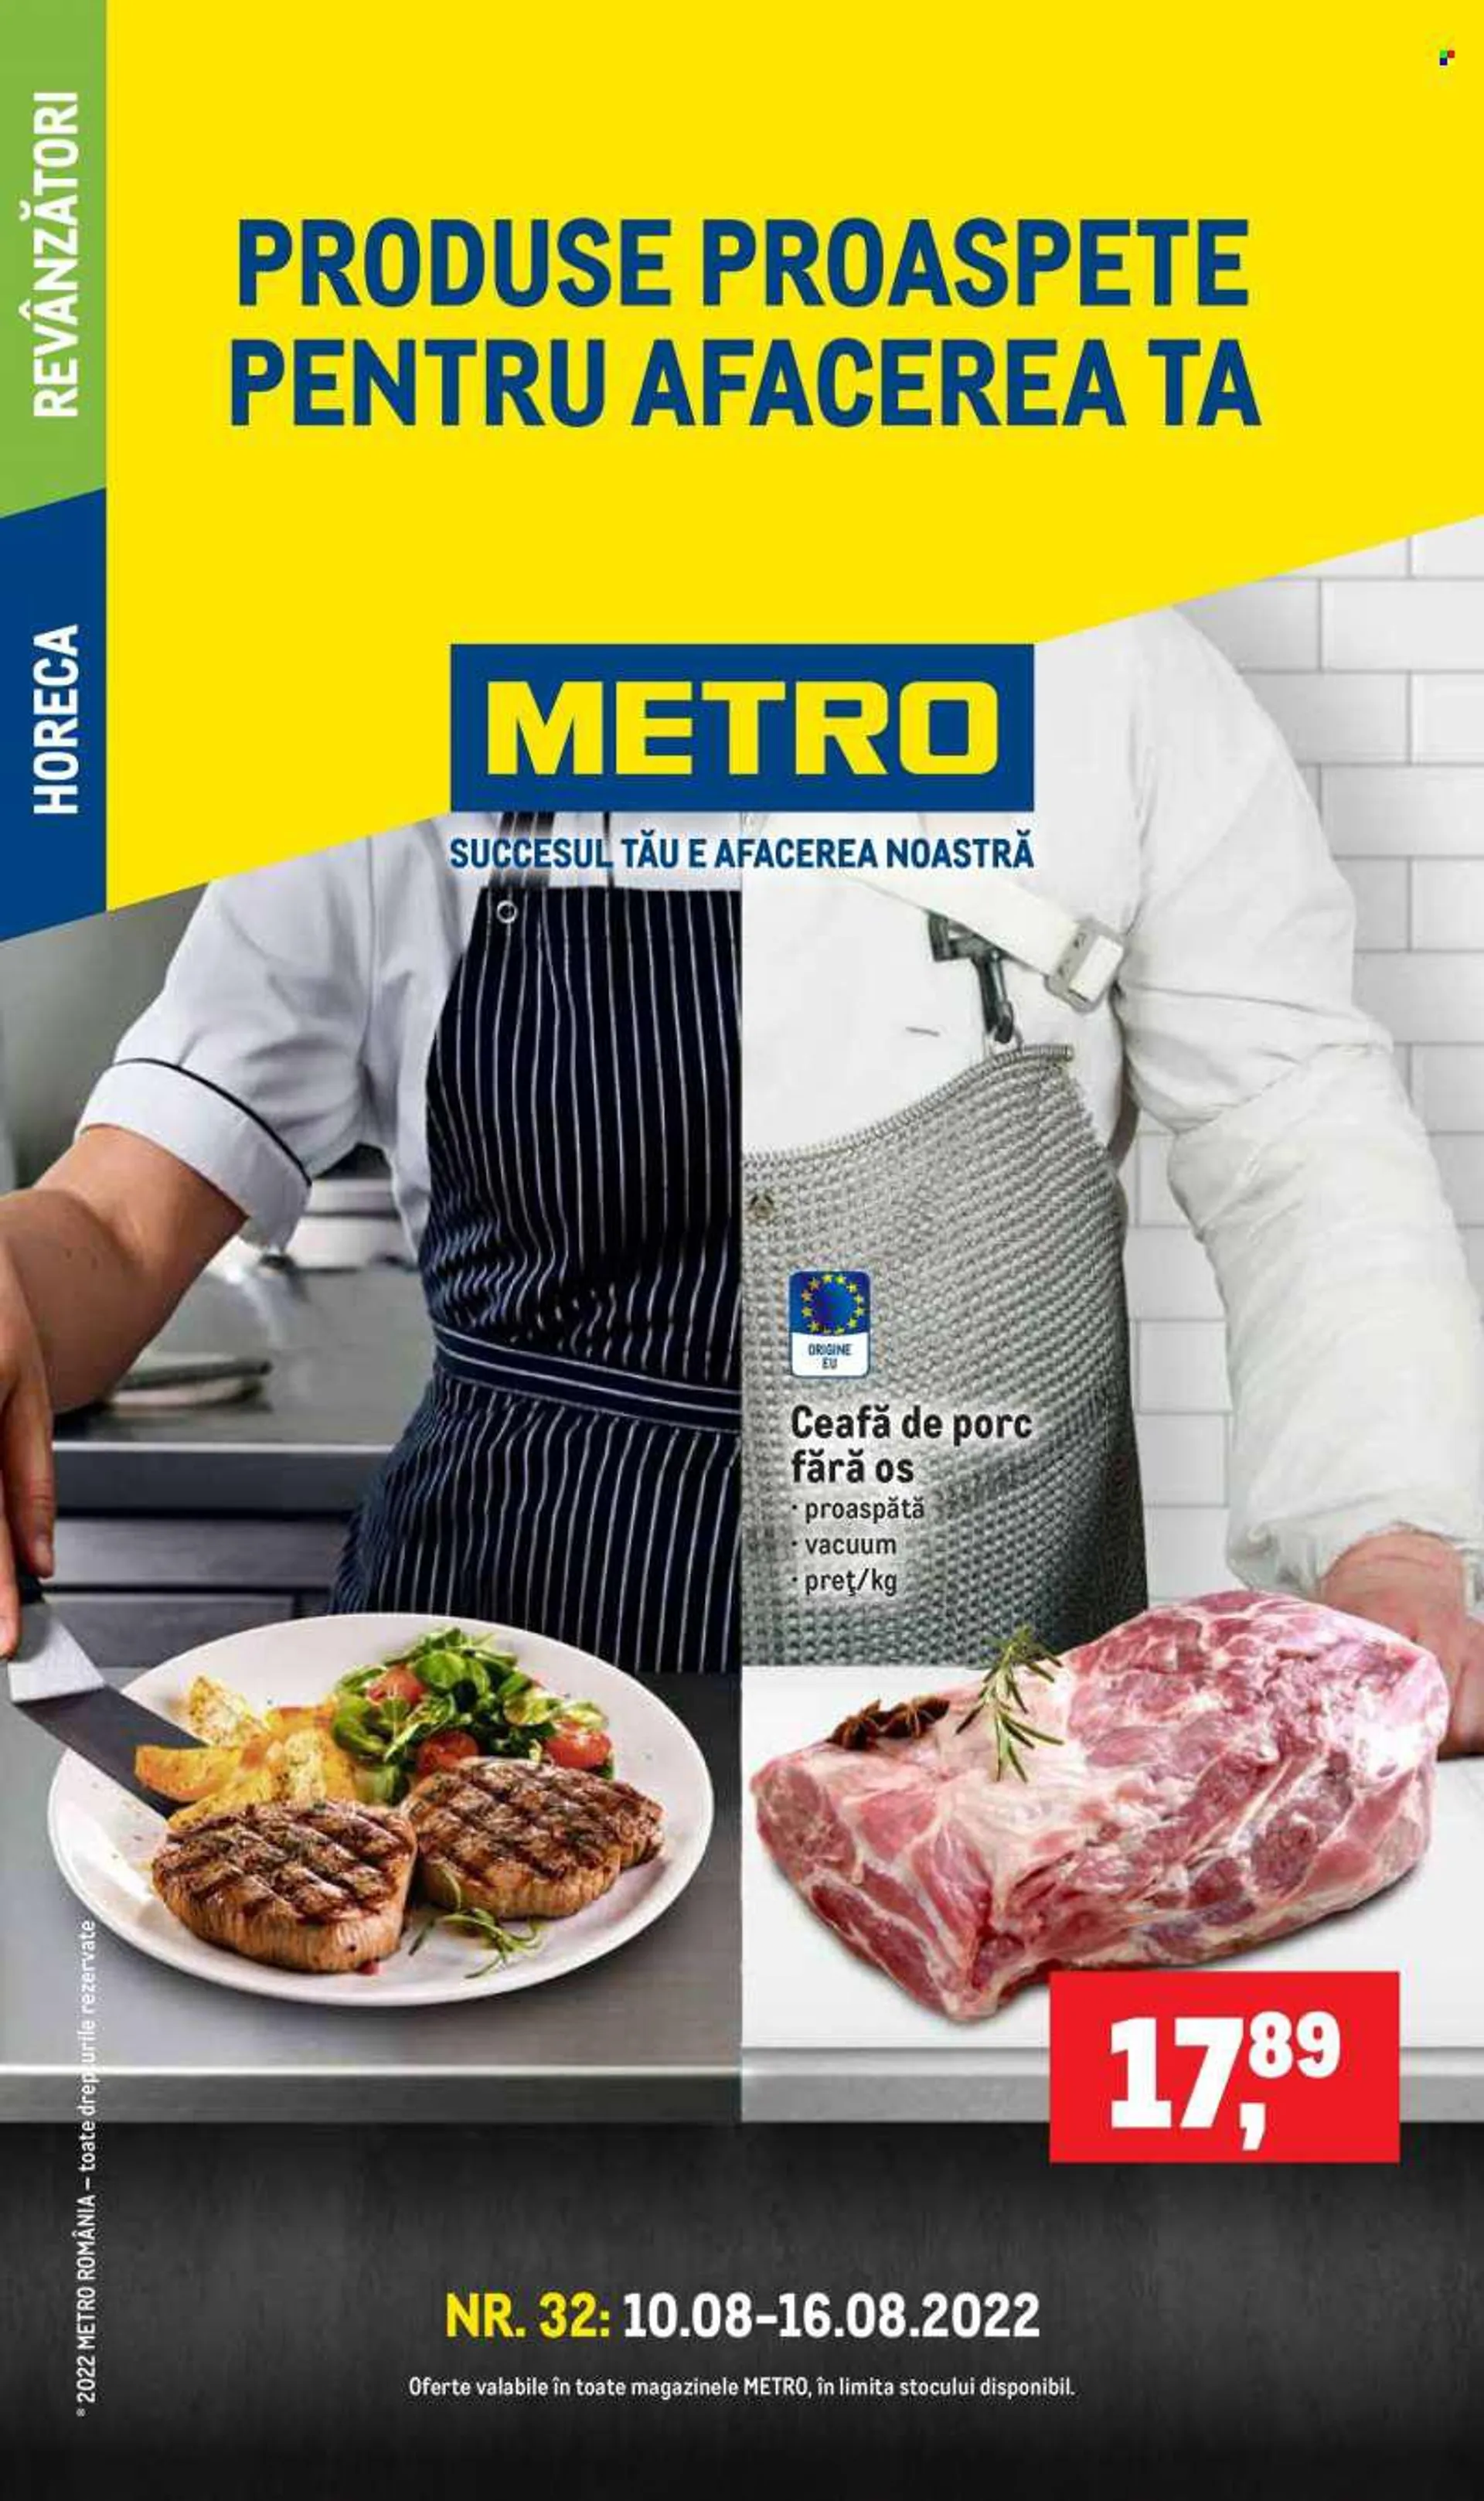 Cataloage Metro - 10.08.2022 - 16.08.2022 - Produse în vânzare - carne de porc, ceafă de porc. Pagina 1.